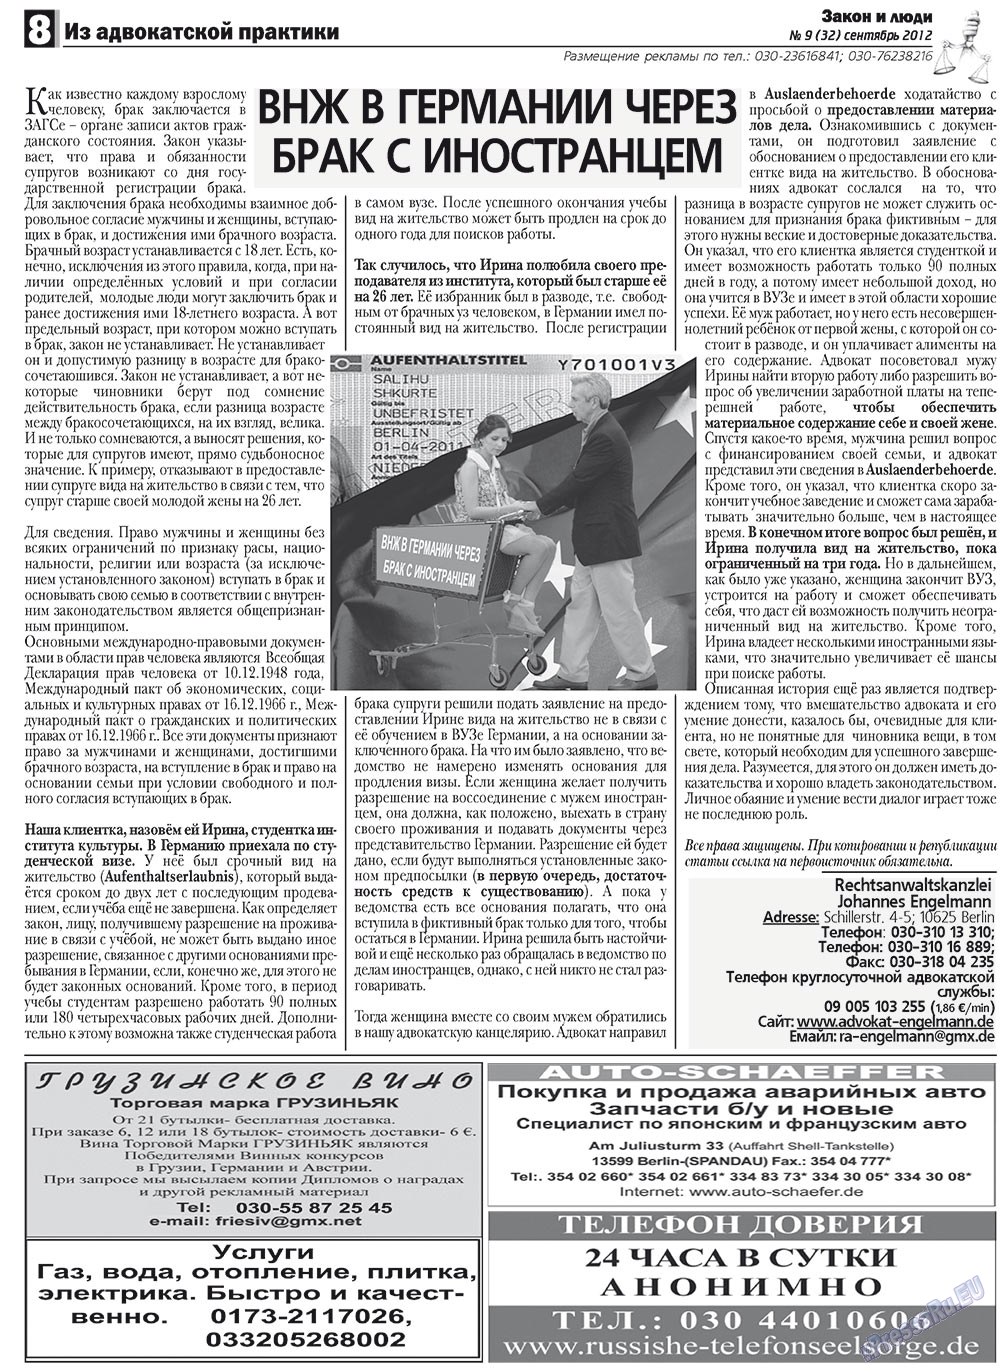 Закон и люди, газета. 2012 №9 стр.8